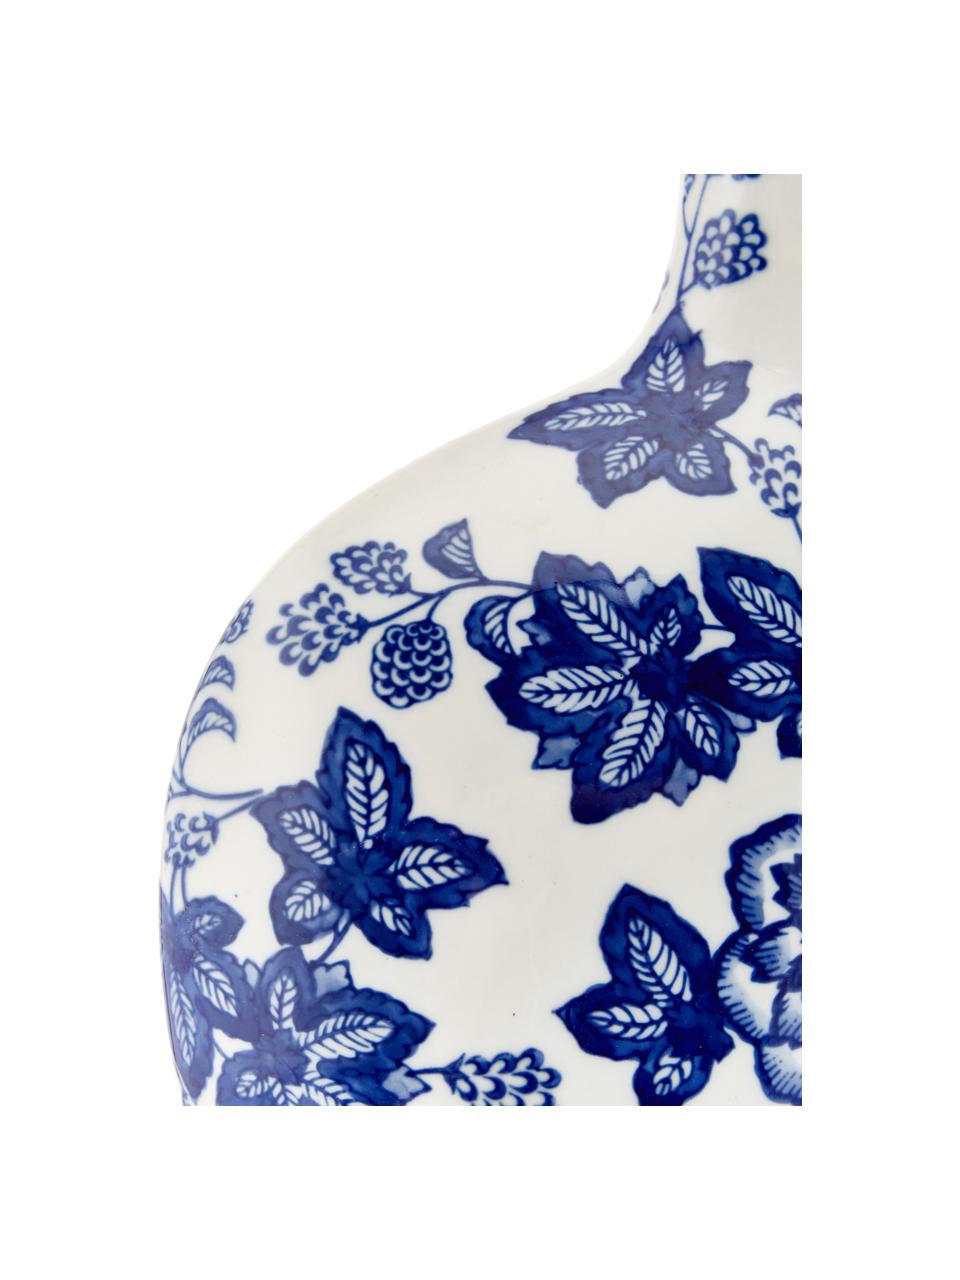 Keramik-Vase Blue Flowers, Keramik, Gebrochenes Weiß, Blau, B 26 x H 32 cm